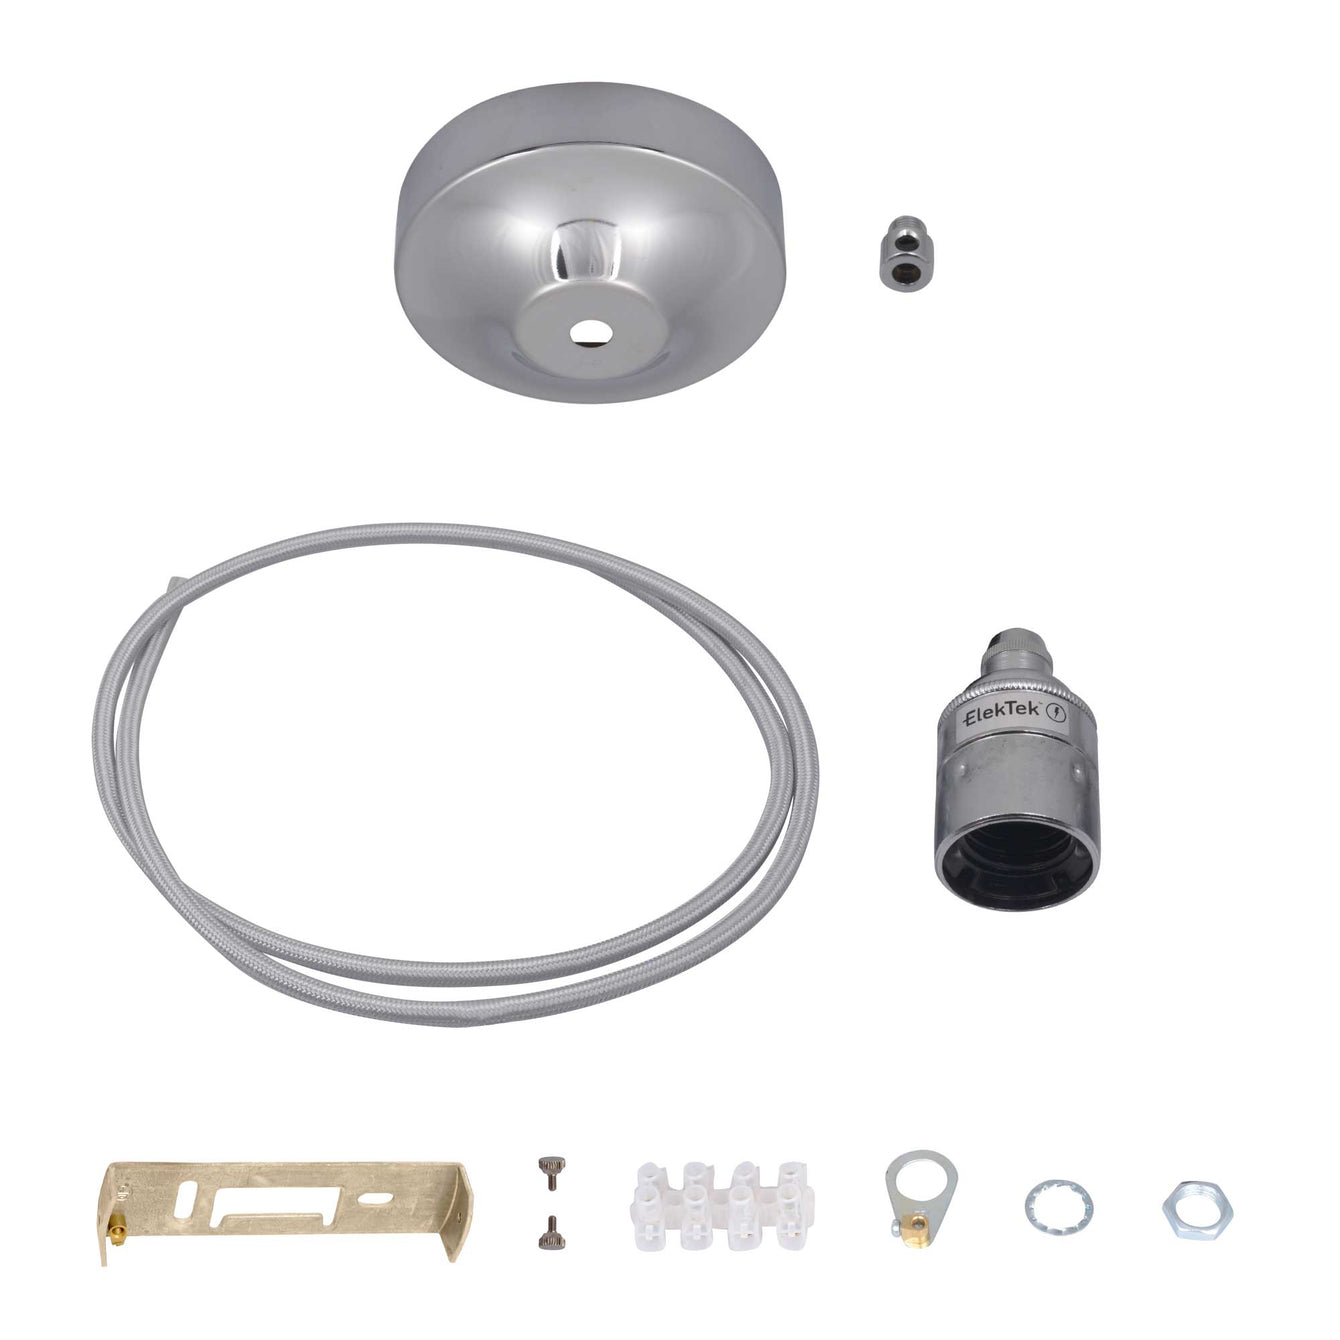 ElekTek Premium Pendant Light Kit DIY 100mm Convex Ceiling Rose, Round Flex and Lamp Holder E27 Plain Cord Grip - Buy It Better 